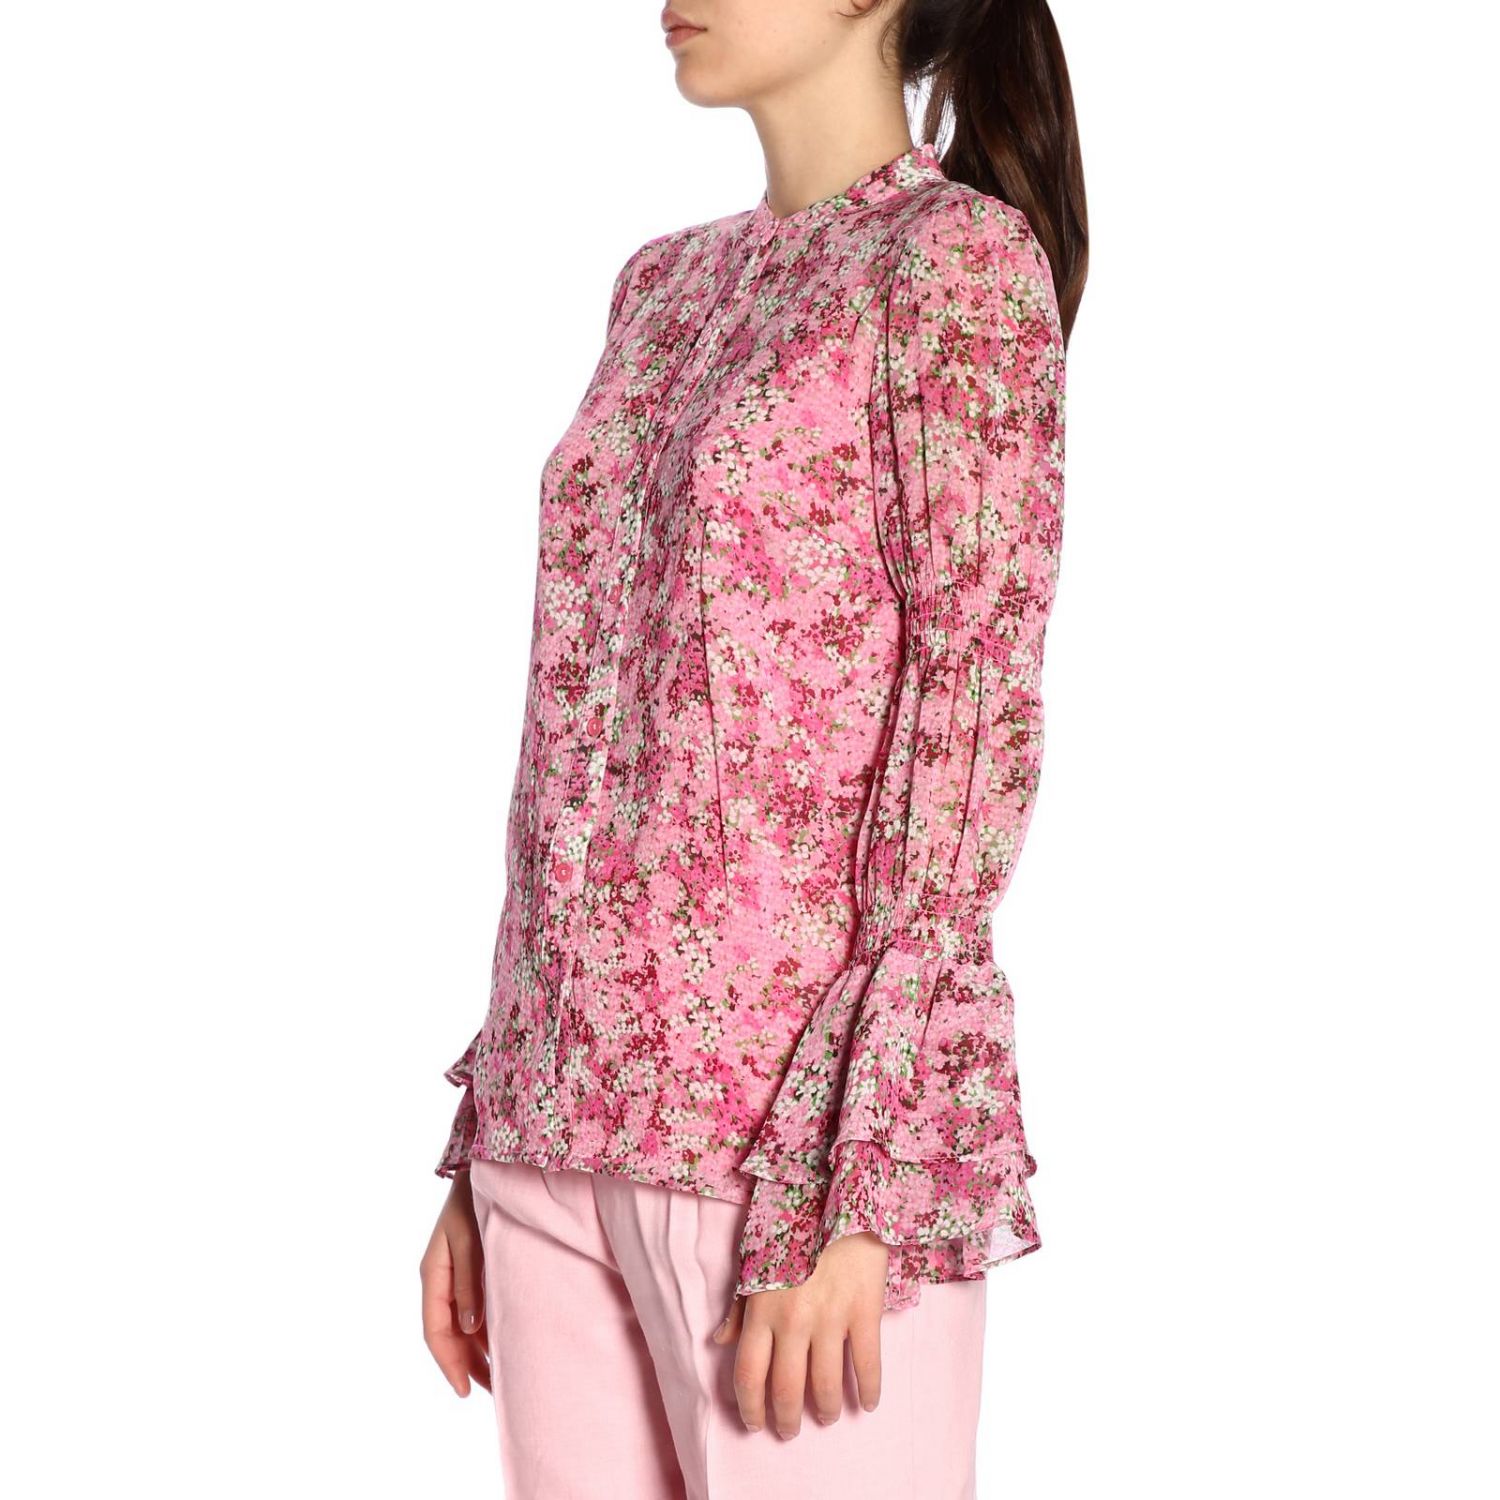 Michael Kors Outlet: Shirt women Michael - Pink | Shirt Michael Kors ...